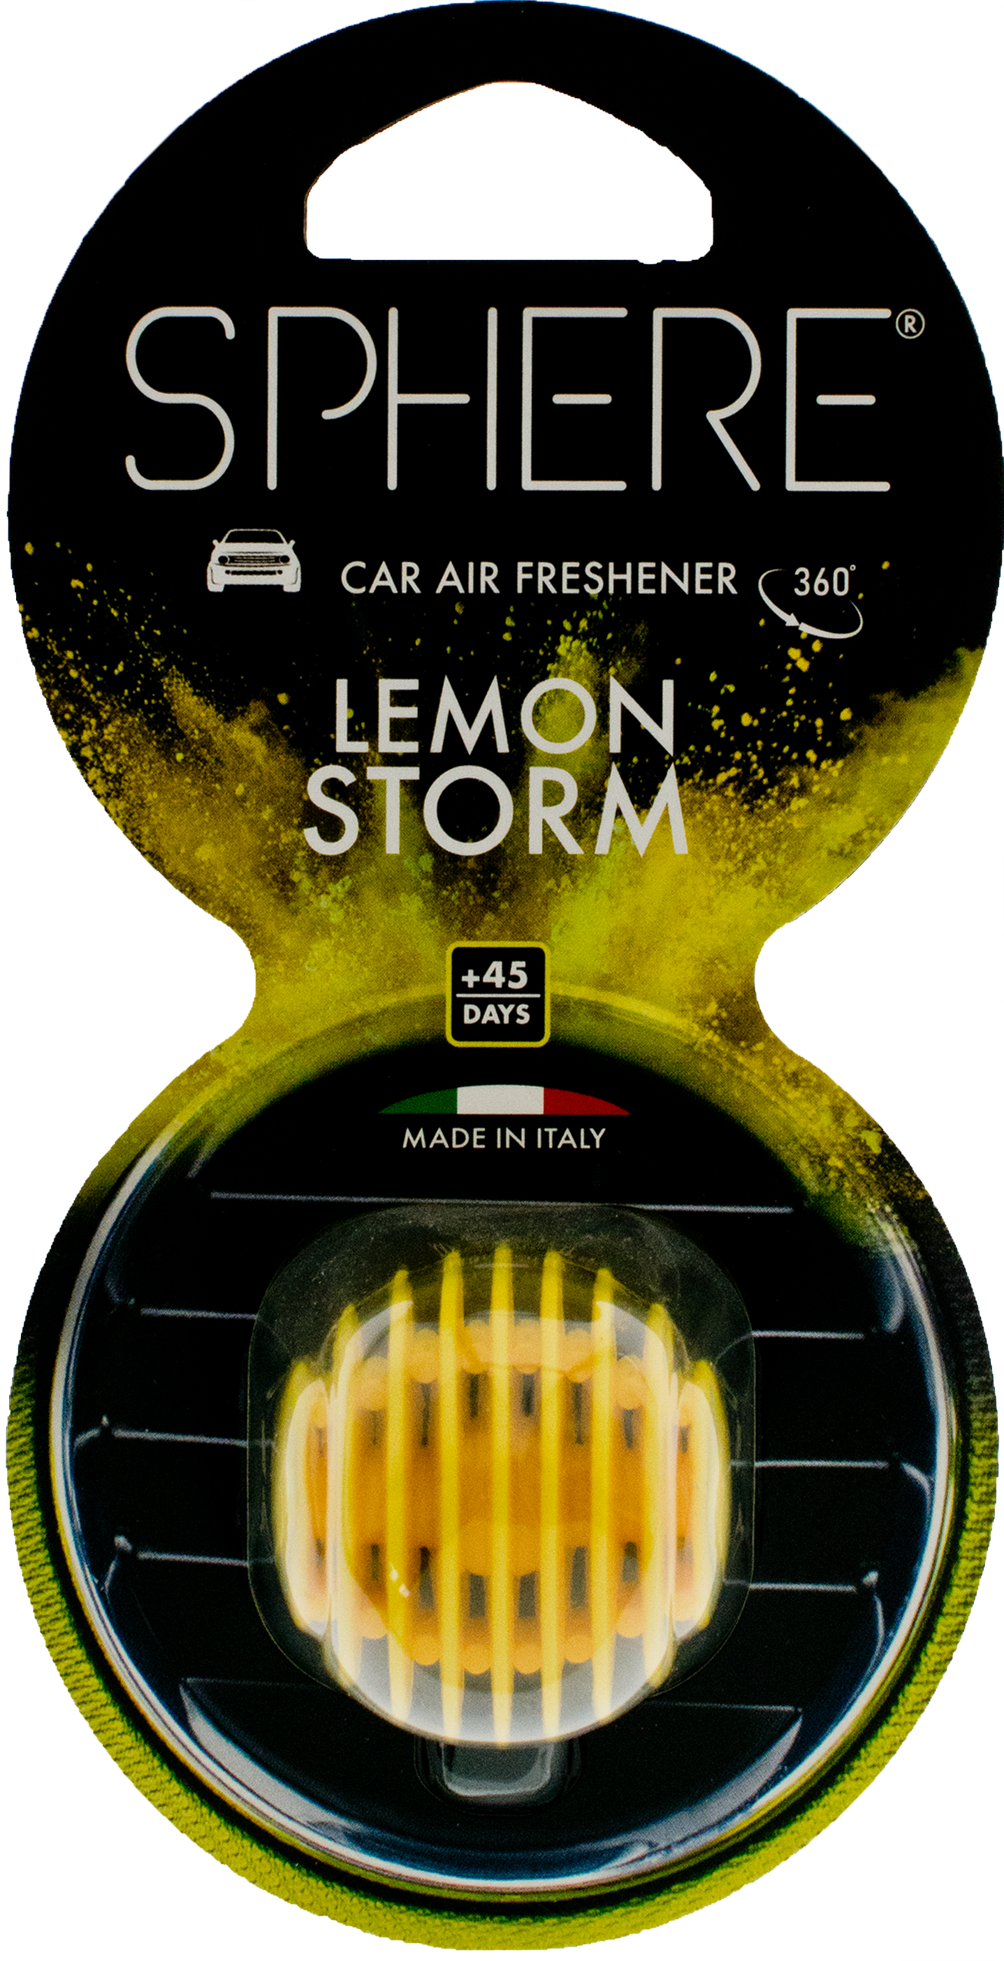 Bild von Lufterfrischer SPHERE Lemon Storm